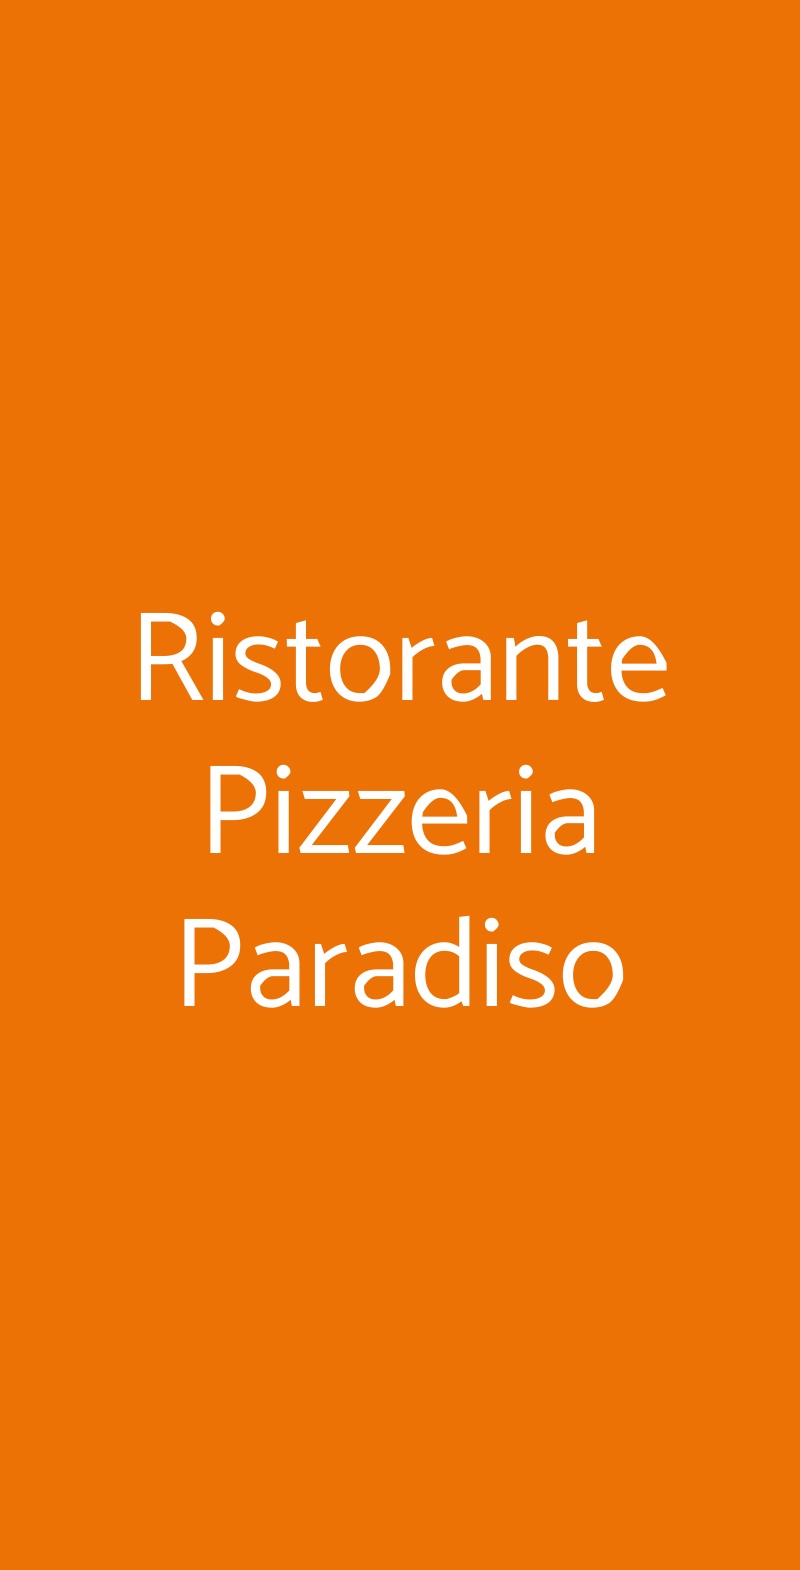 Ristorante Pizzeria Paradiso Pisa menù 1 pagina